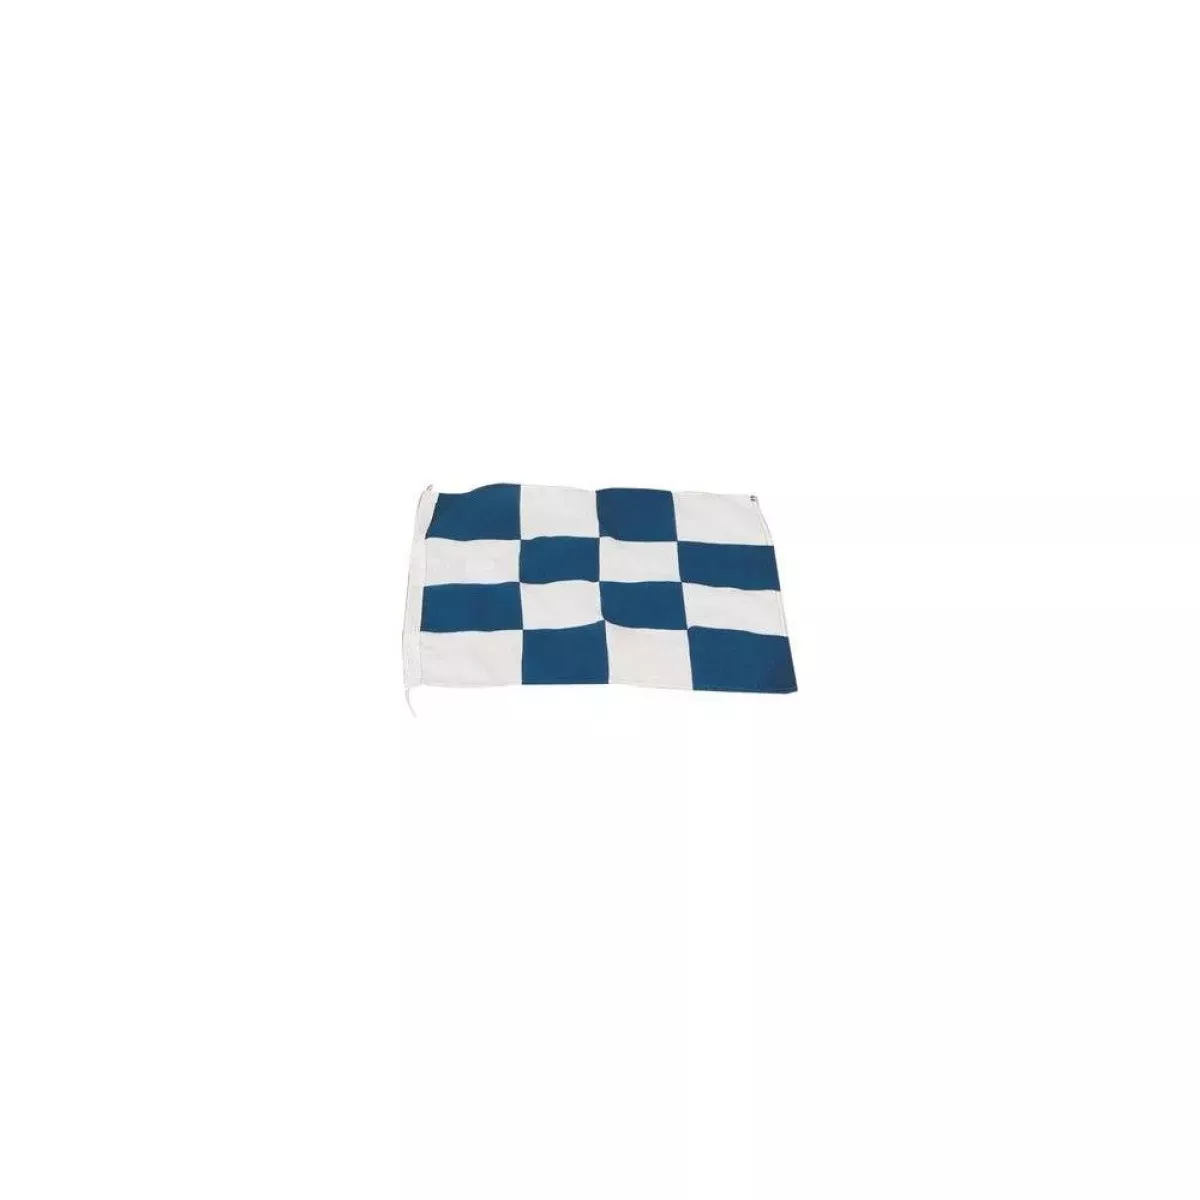 #1 - Broflag N - Internationalt signalflag, 30x45 cm